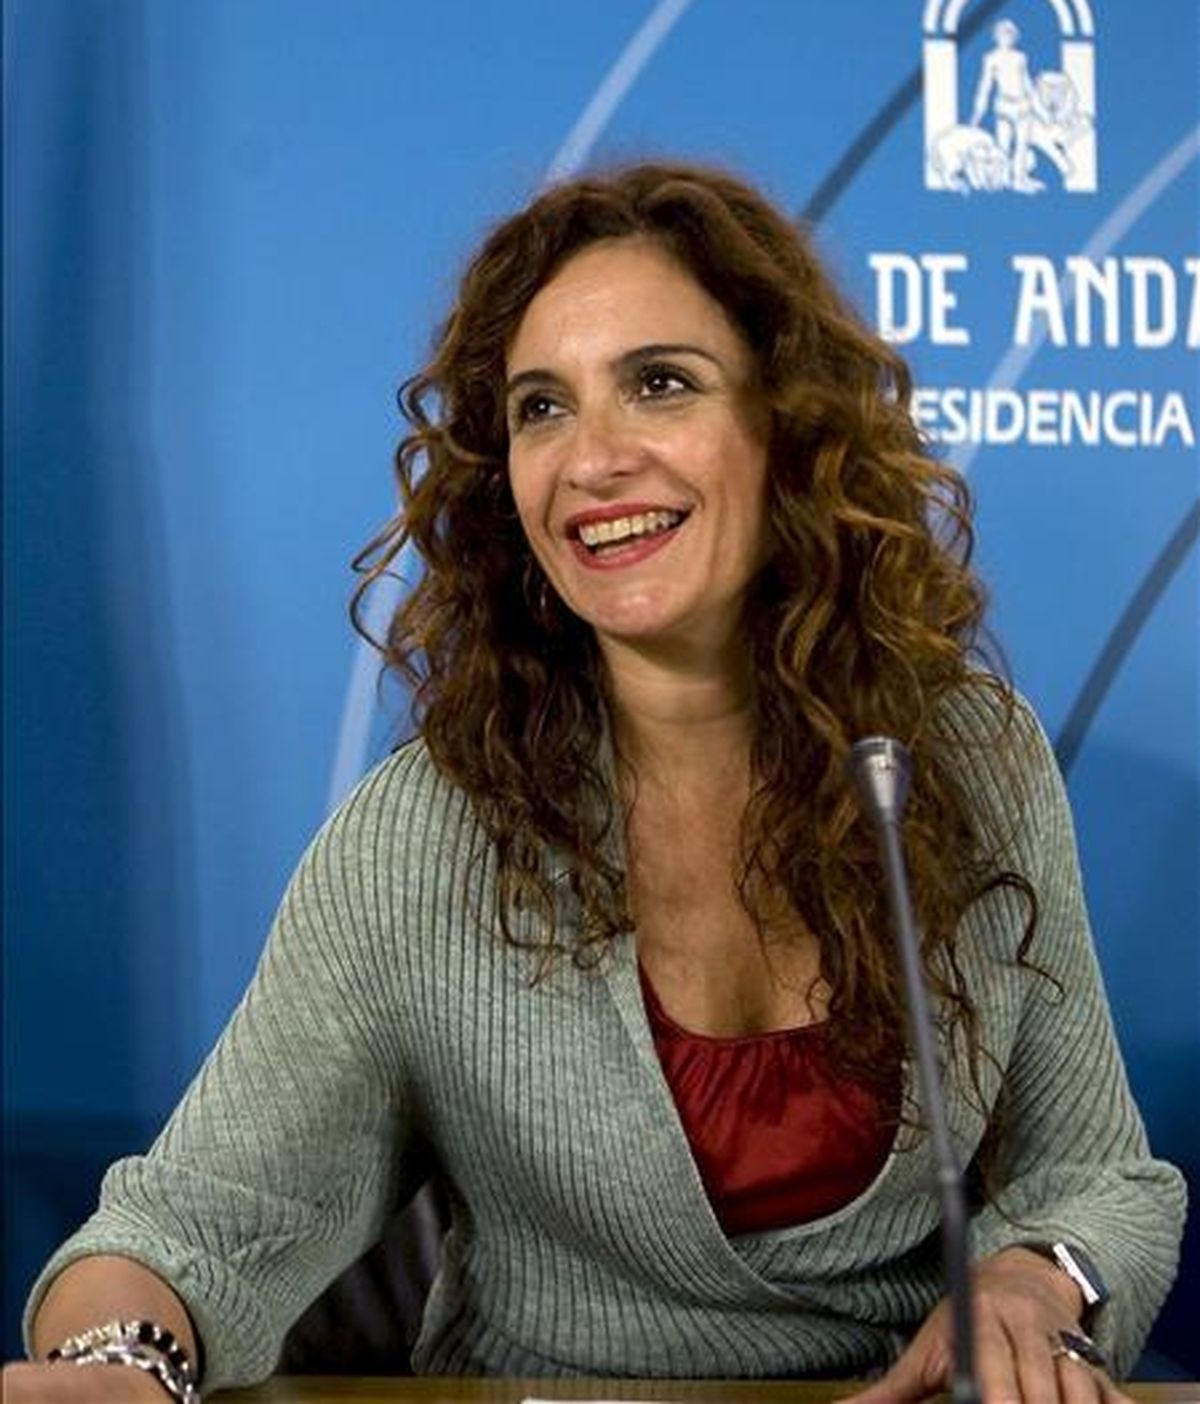 La consejera andaluza de Salud, María Jesús Montero, en la rueda de prensa ofrecida tras la reunión del Consejo de Gobierno de Andalucía que hoy aprobó, entre otros asuntos, el proyecto de ley de derechos y garantías de la dignidad de las personas en el proceso de la muerte, conocida como "ley de muerte digna". EFE